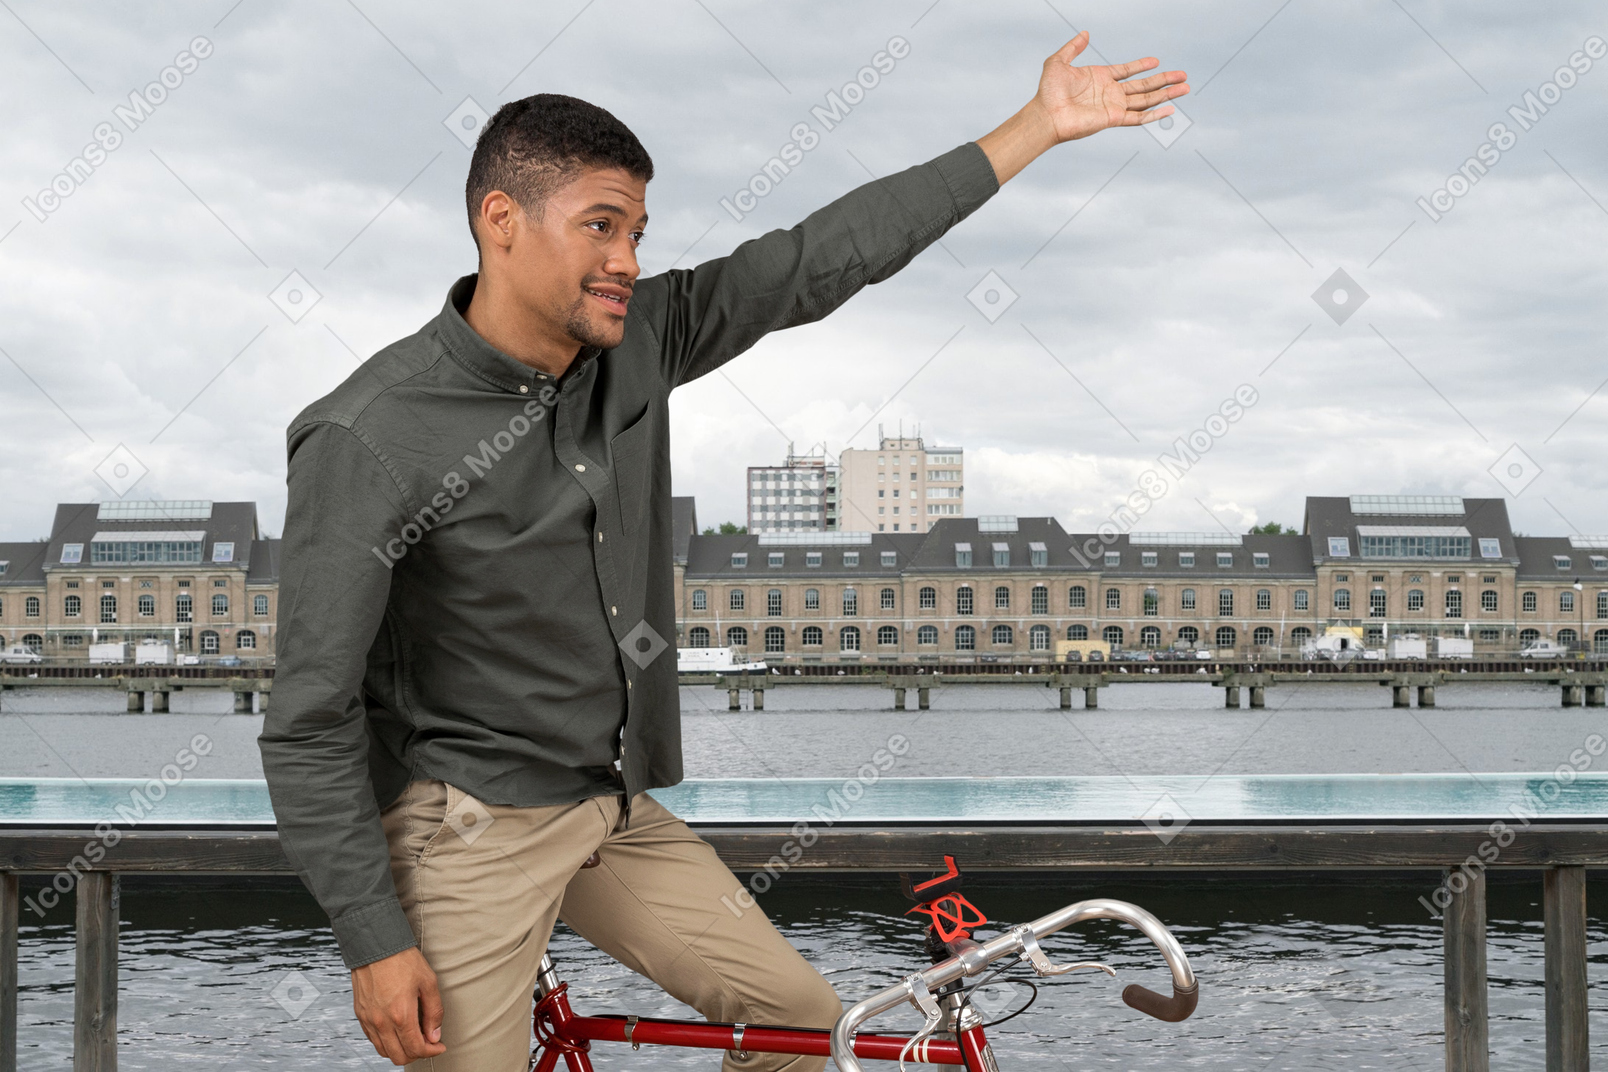 Mann mit fahrrad auf einer brücke